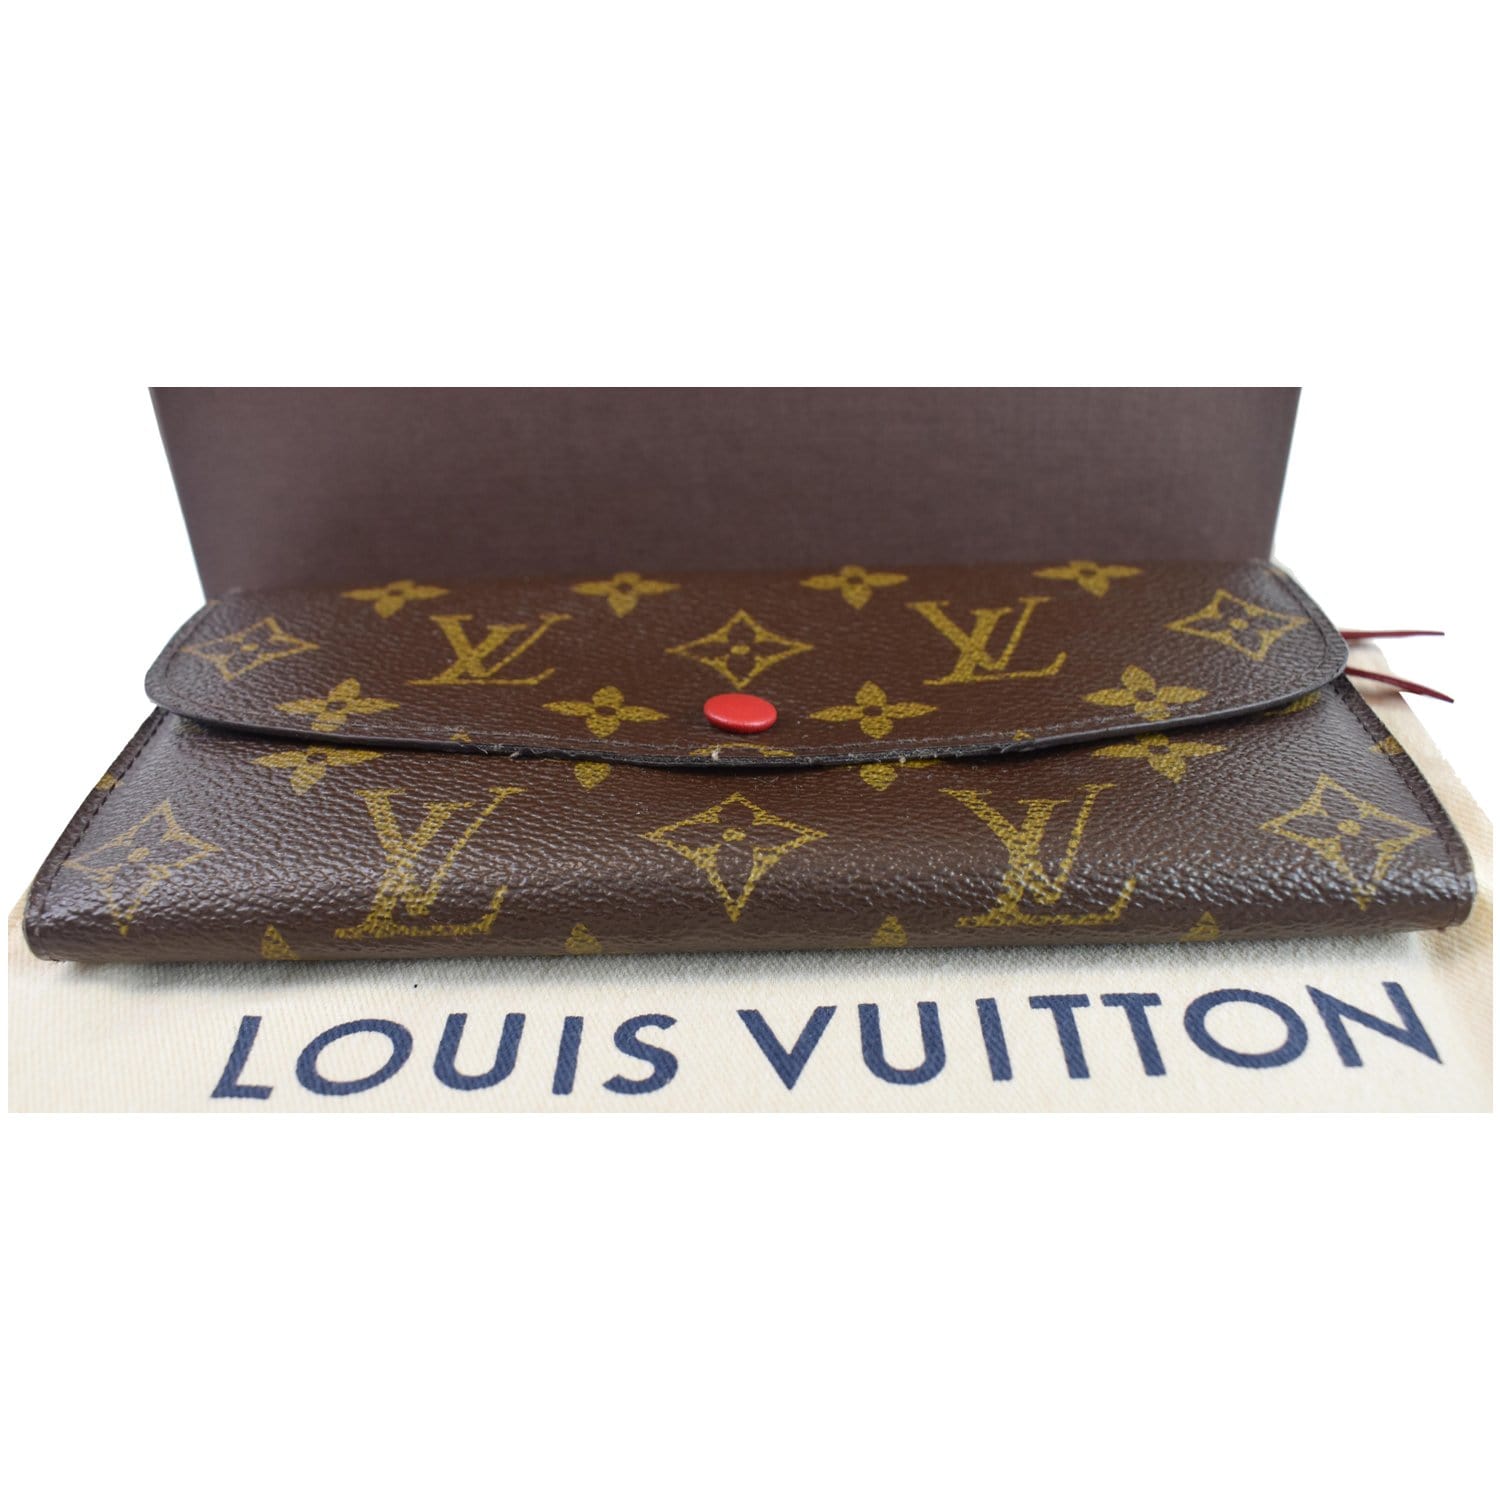 Preowned Louis Vuitton Emilie Monogram Canvas Wallet